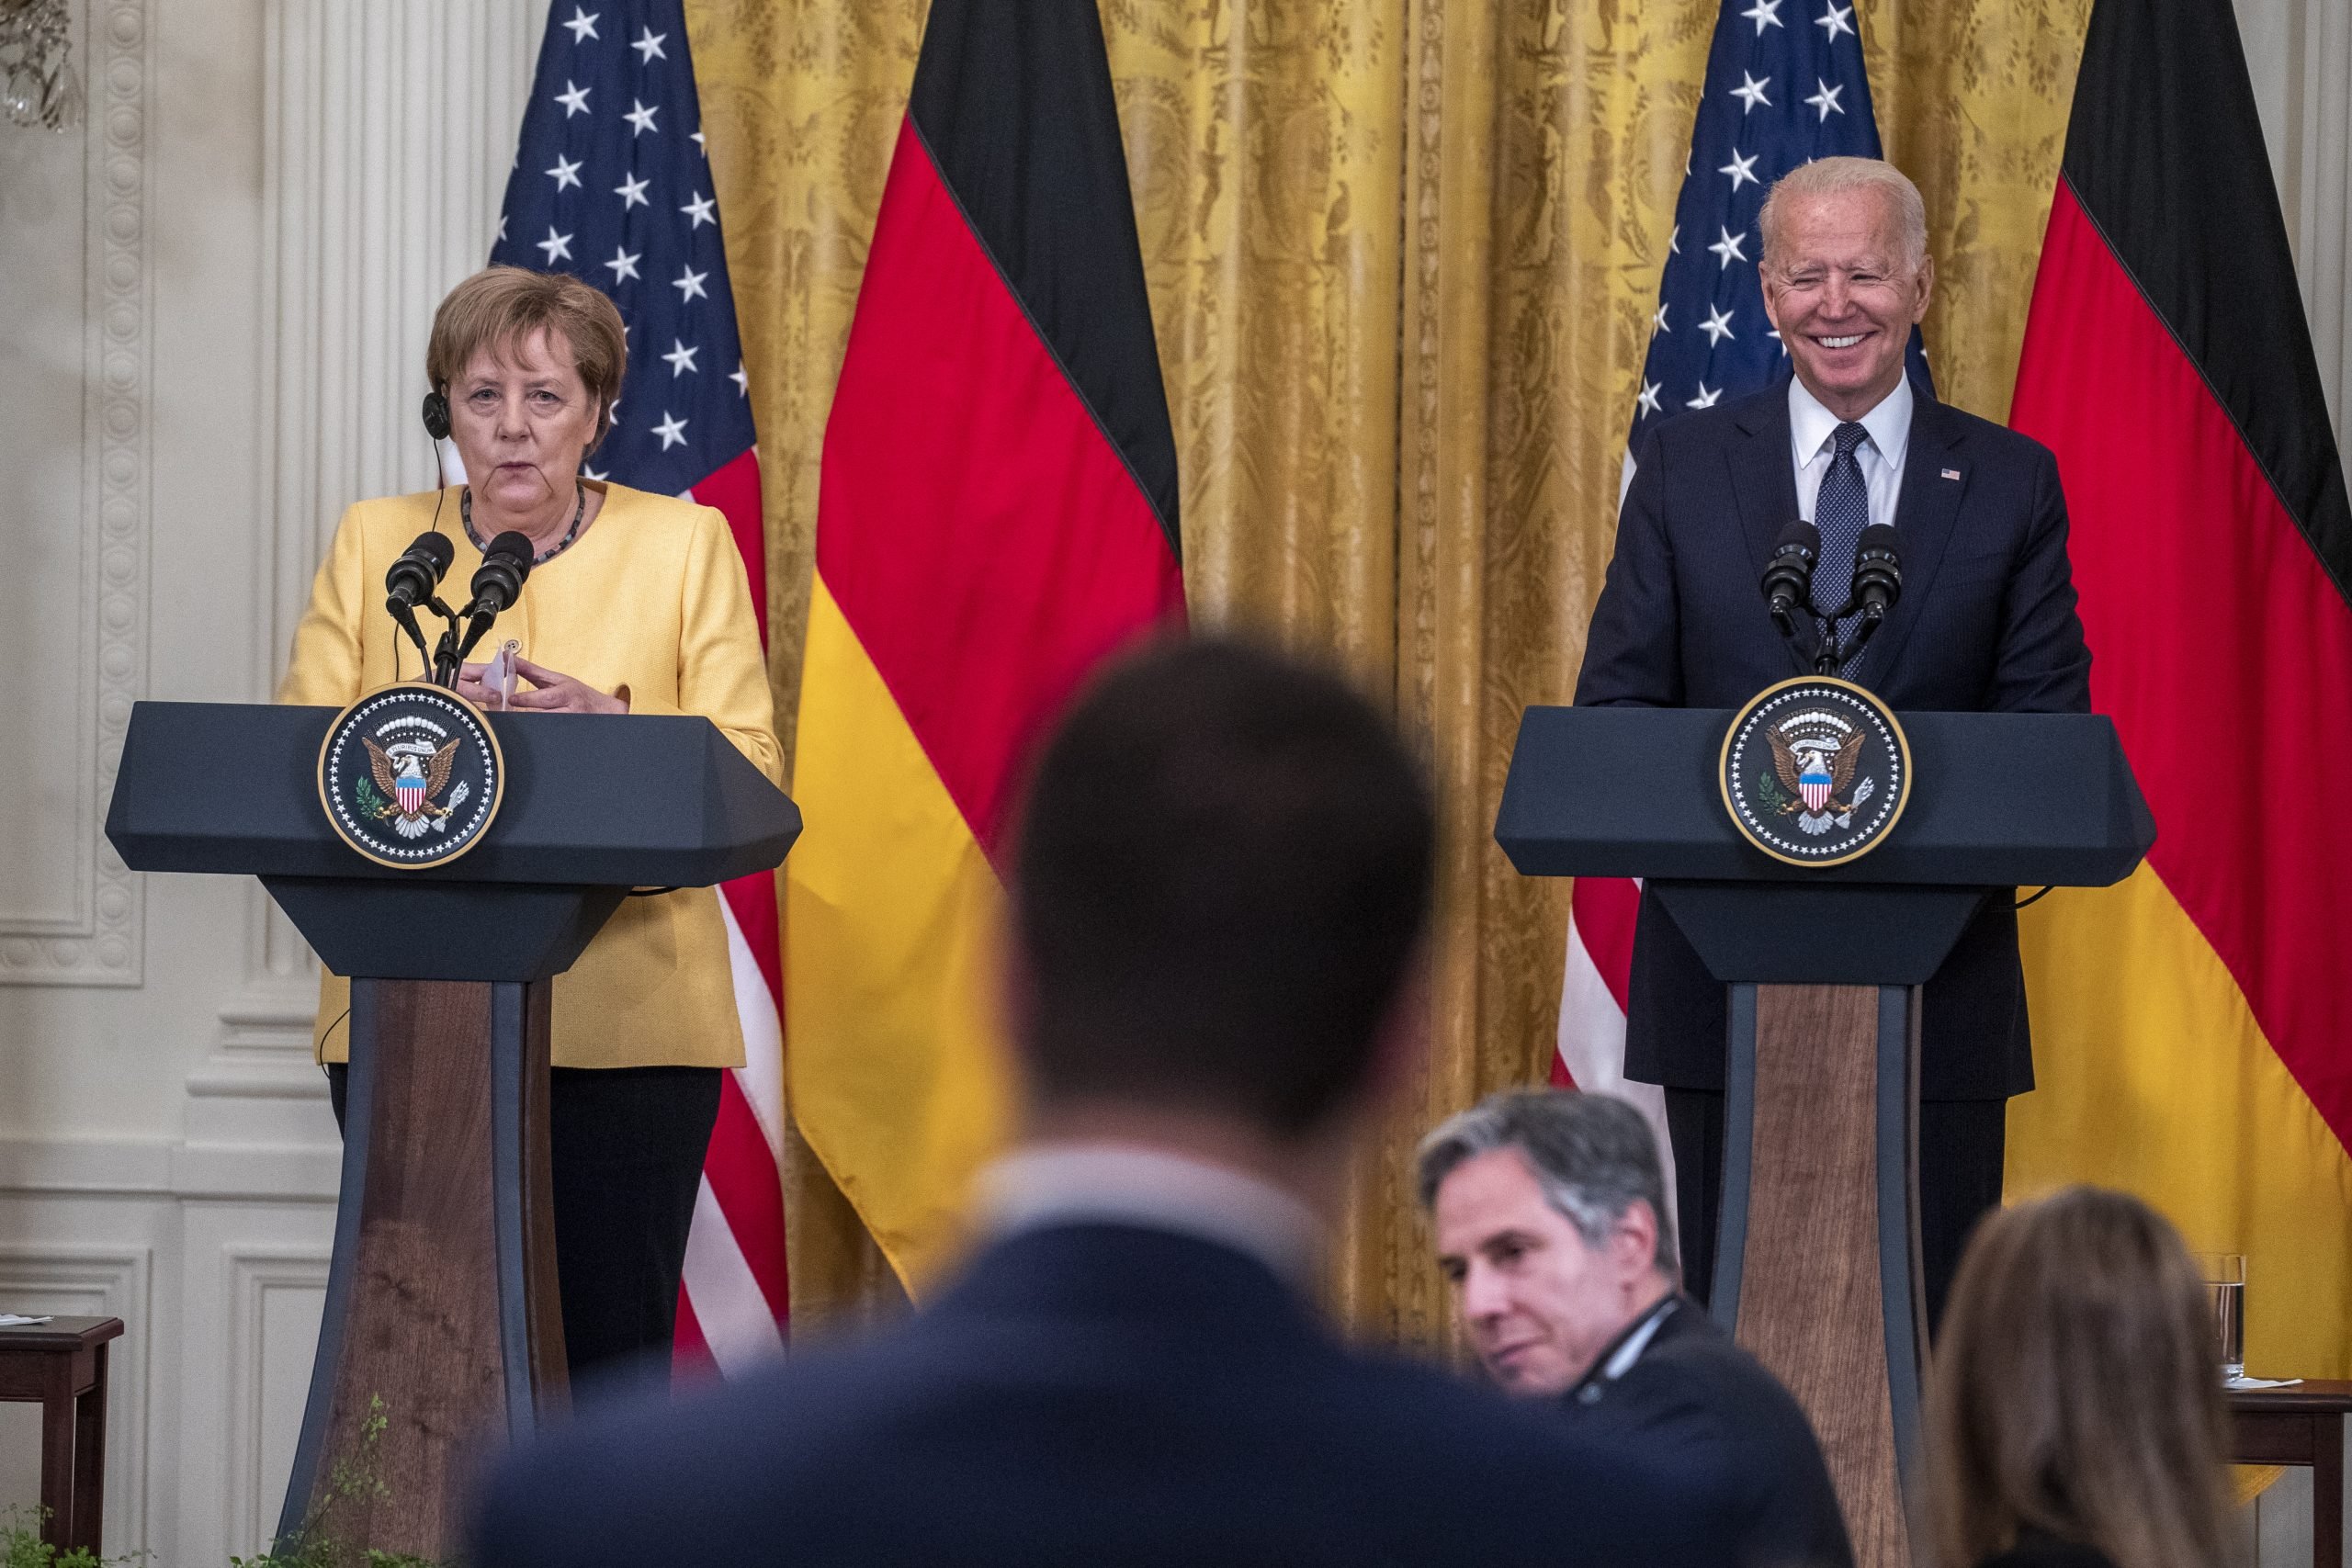 Merkel bracht op 15 juli een bezoek aan het Witte Huis. Foto: EPA/Shawn Thew